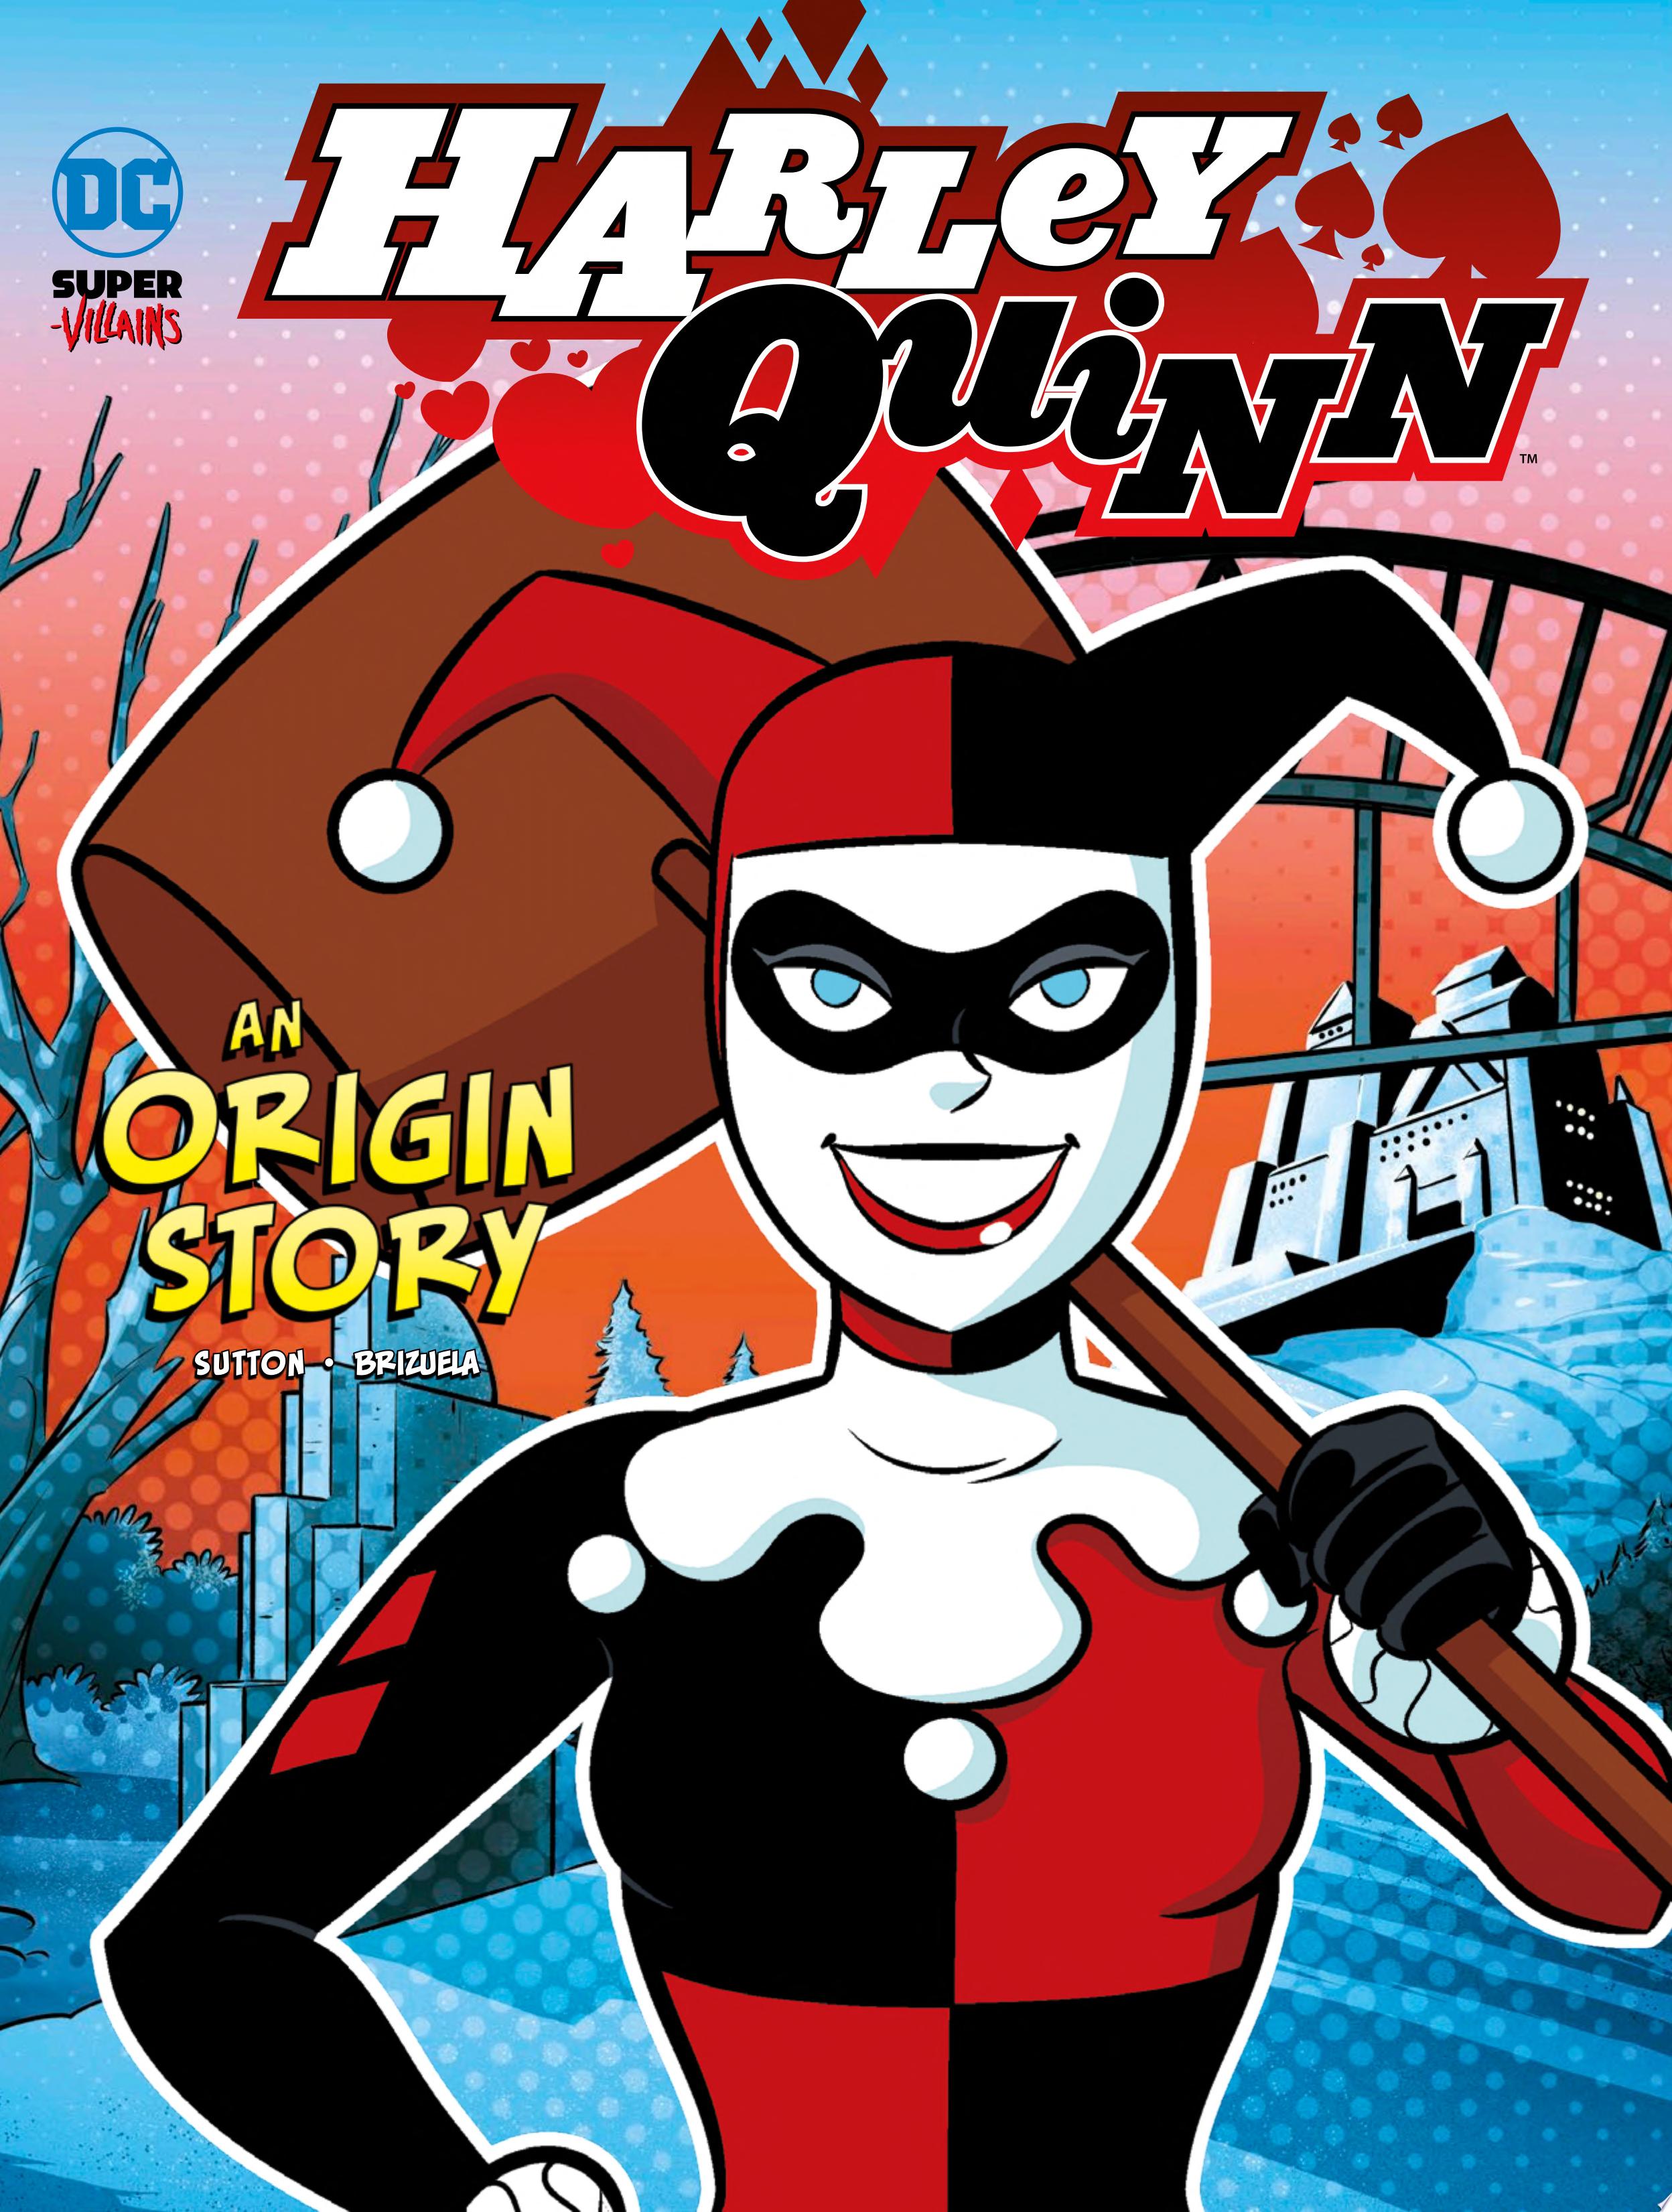 Image for "Harley Quinn"